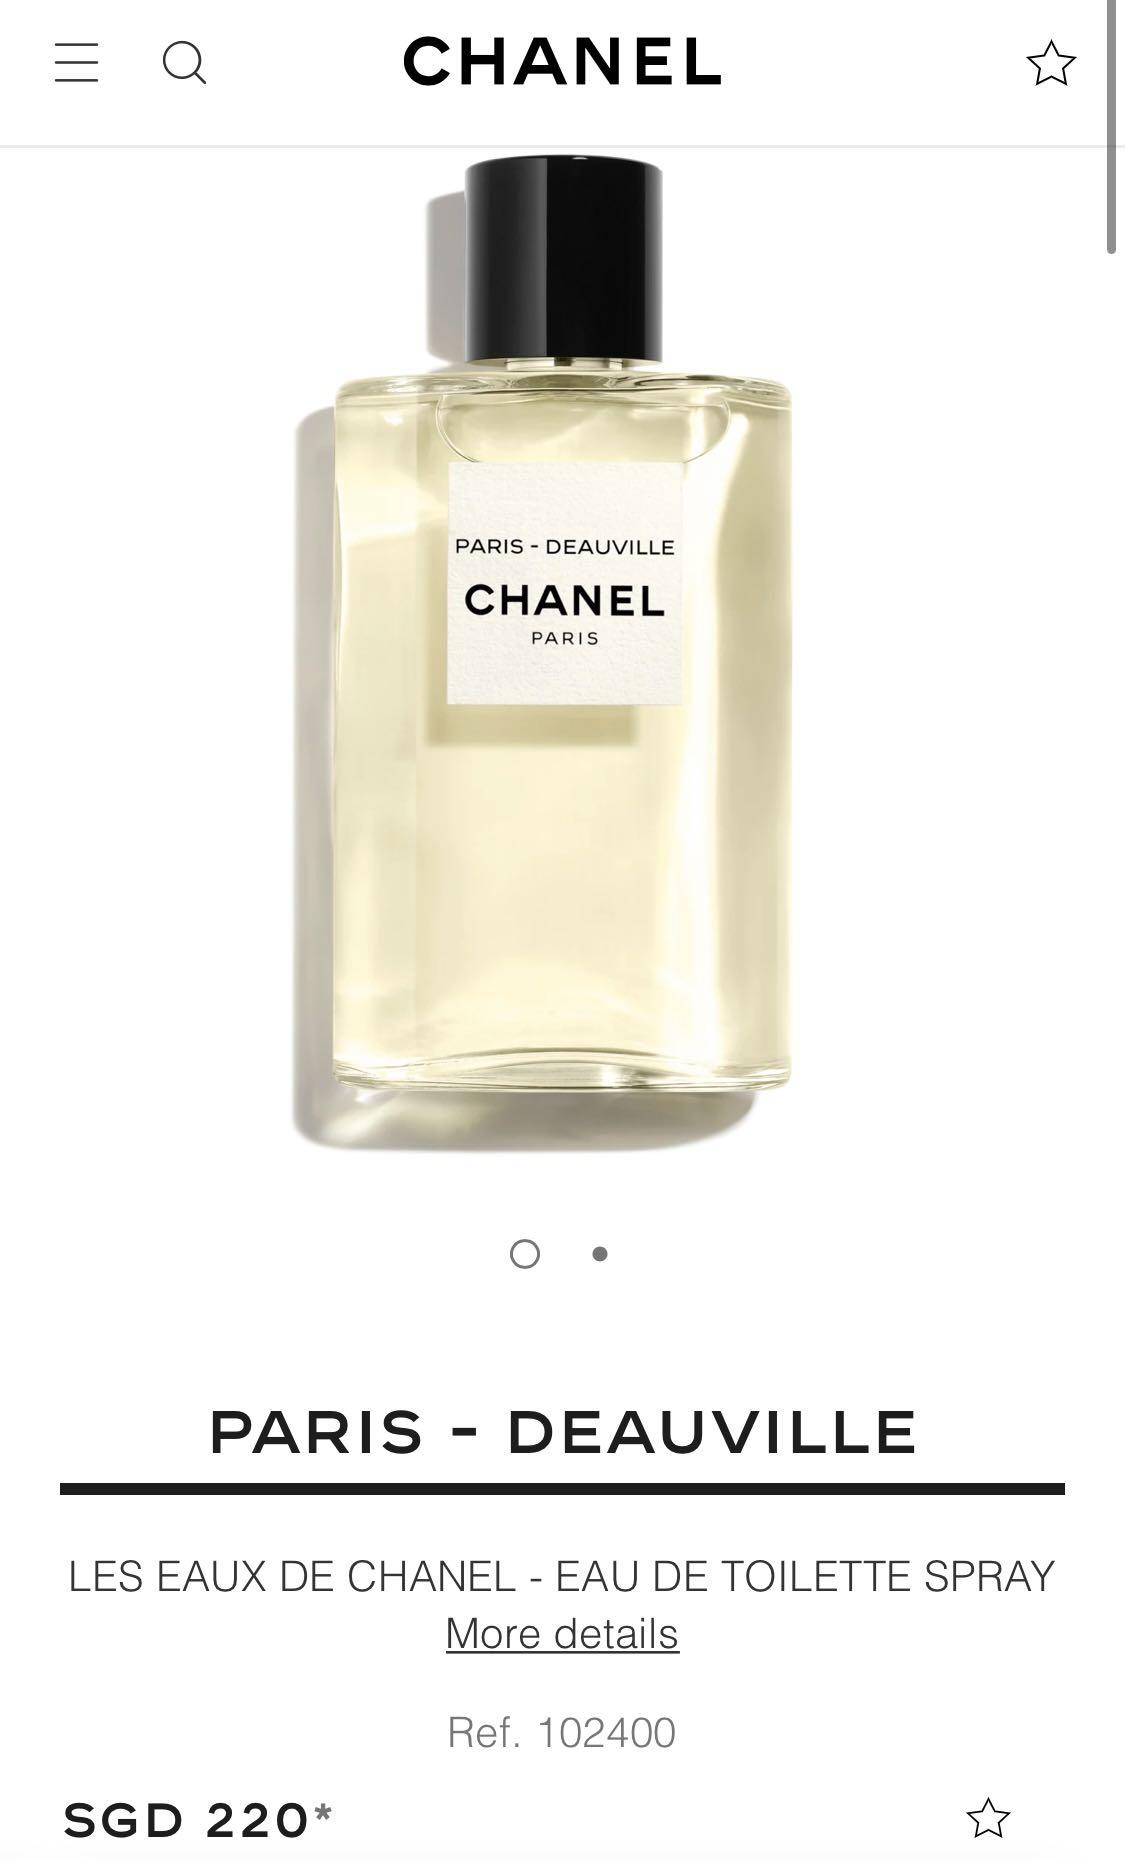 Chanel Parisriviera Les Eaux De Hair And Body Shower Gel  Onecolor   Editorialist